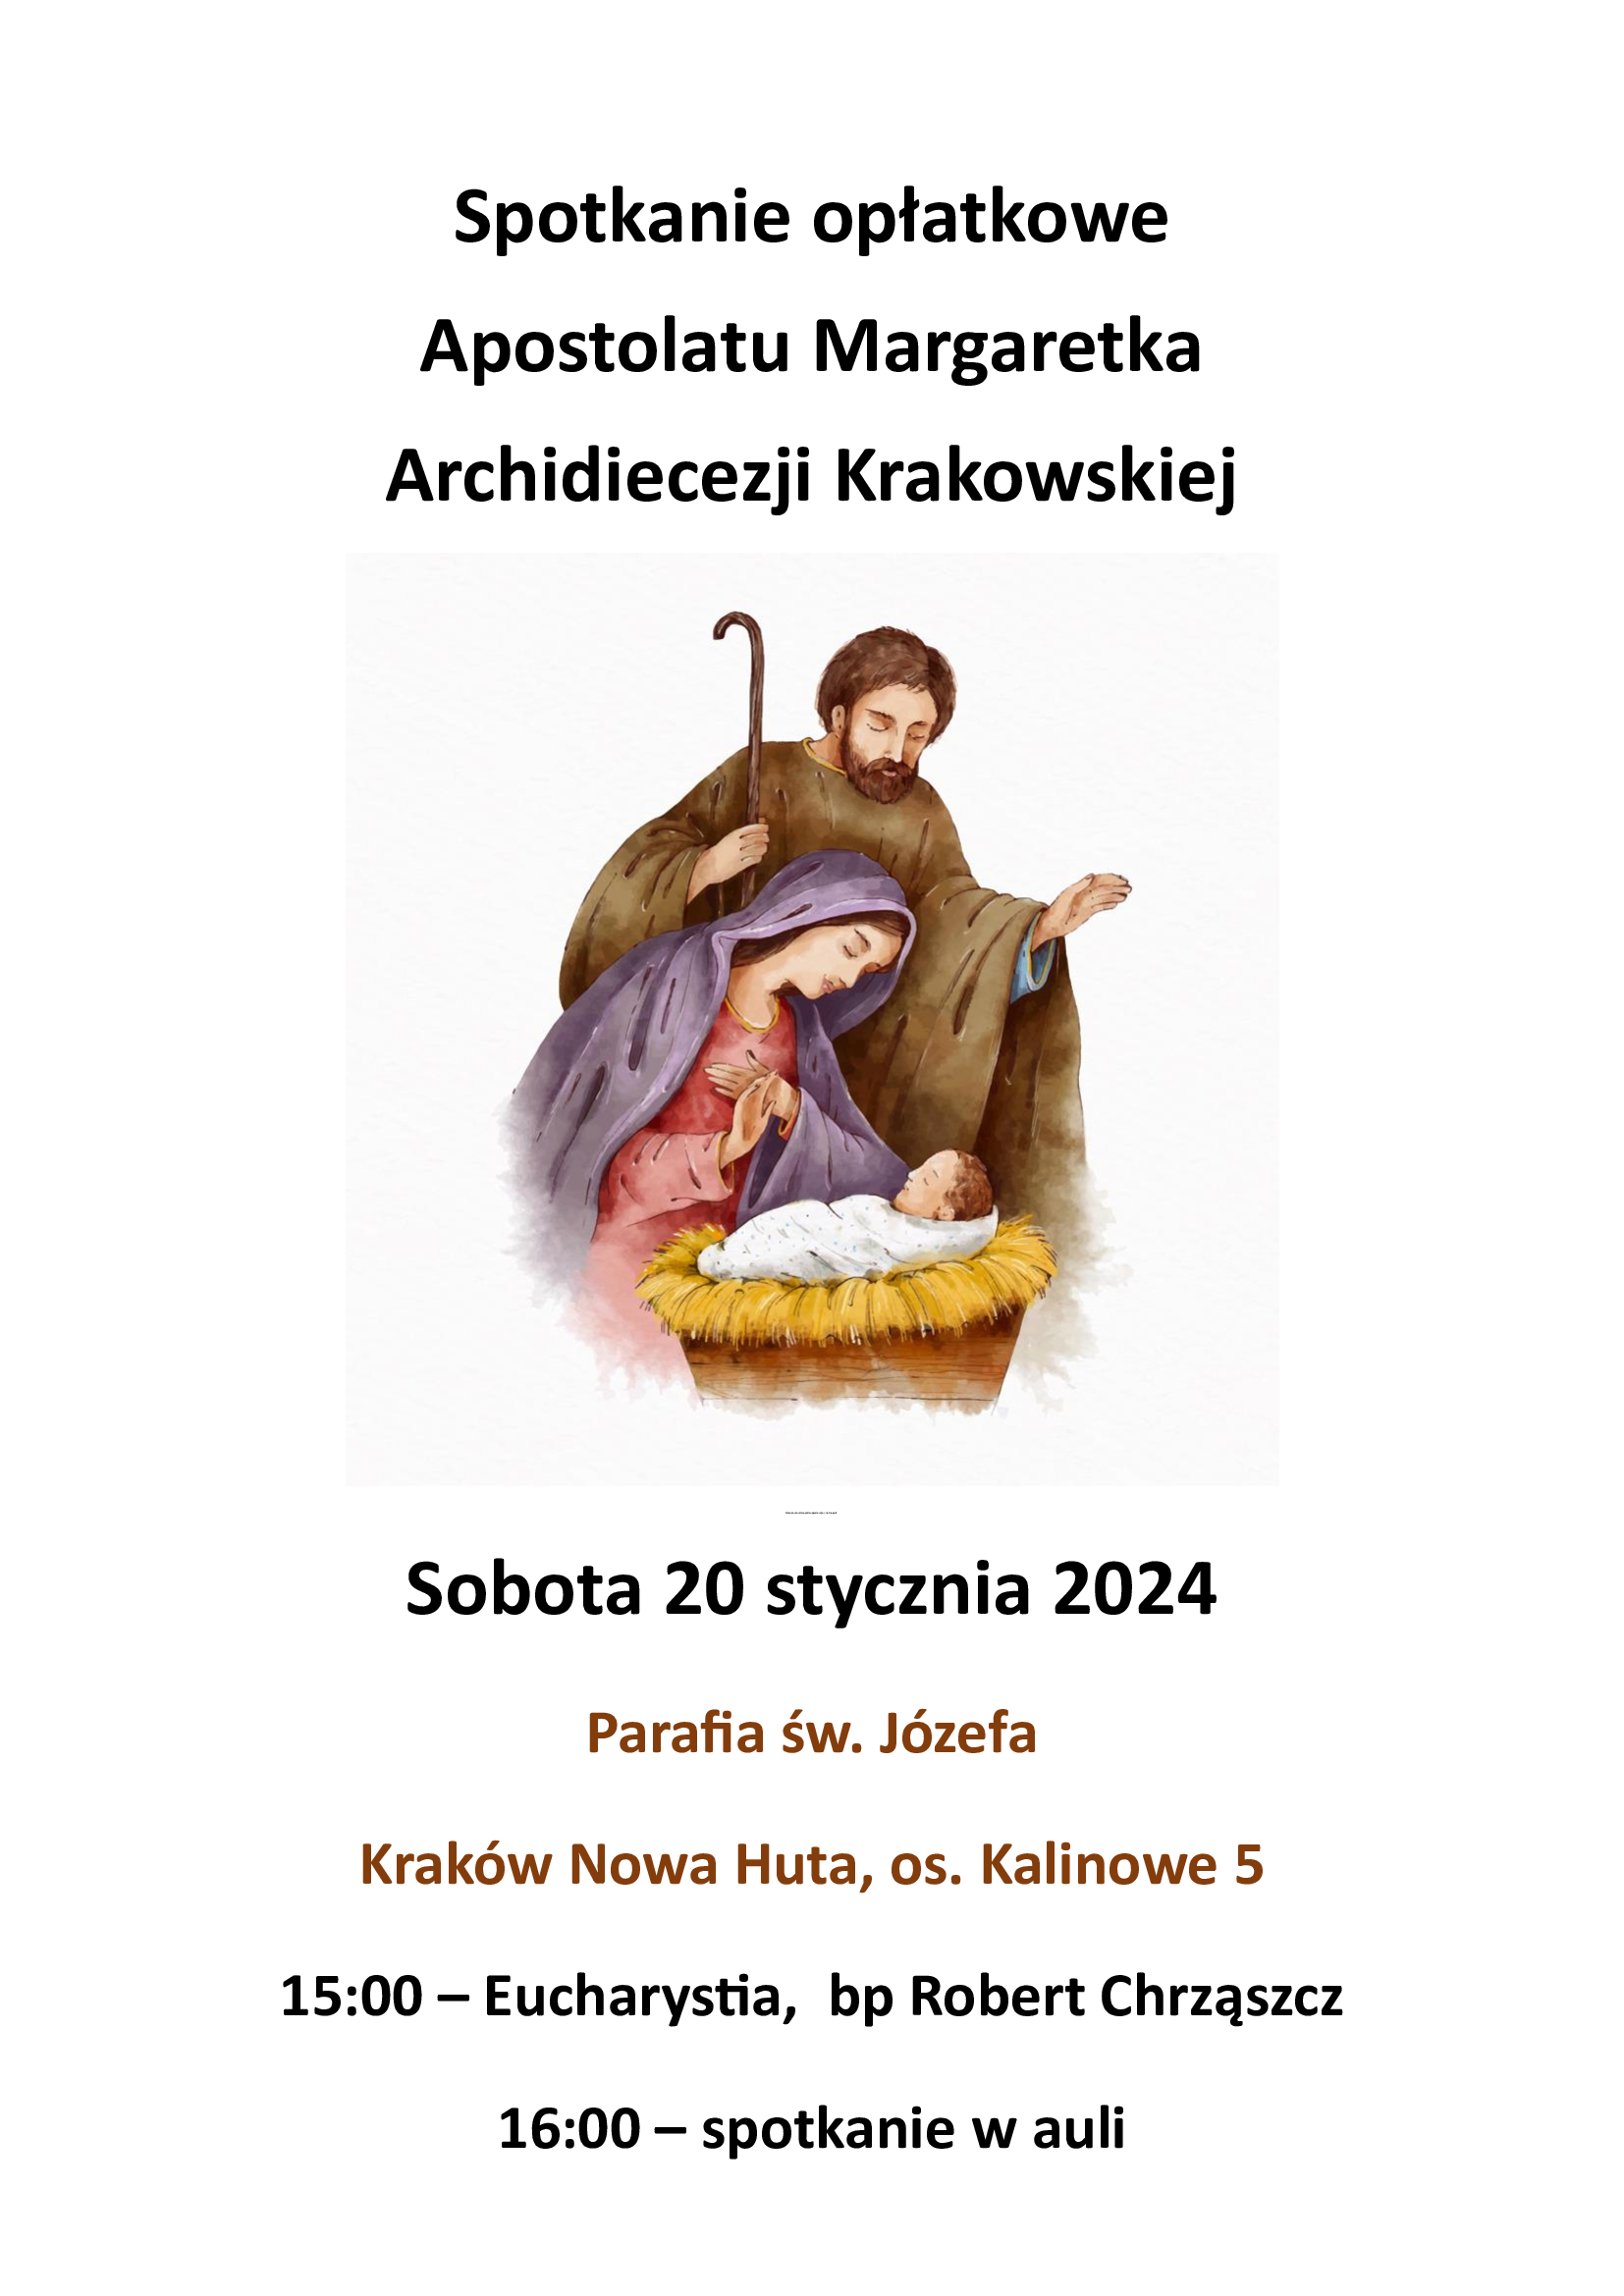 Spotkanie Opłatkowe Apostolatu Margaretka Archidiecezji Krakowskiej